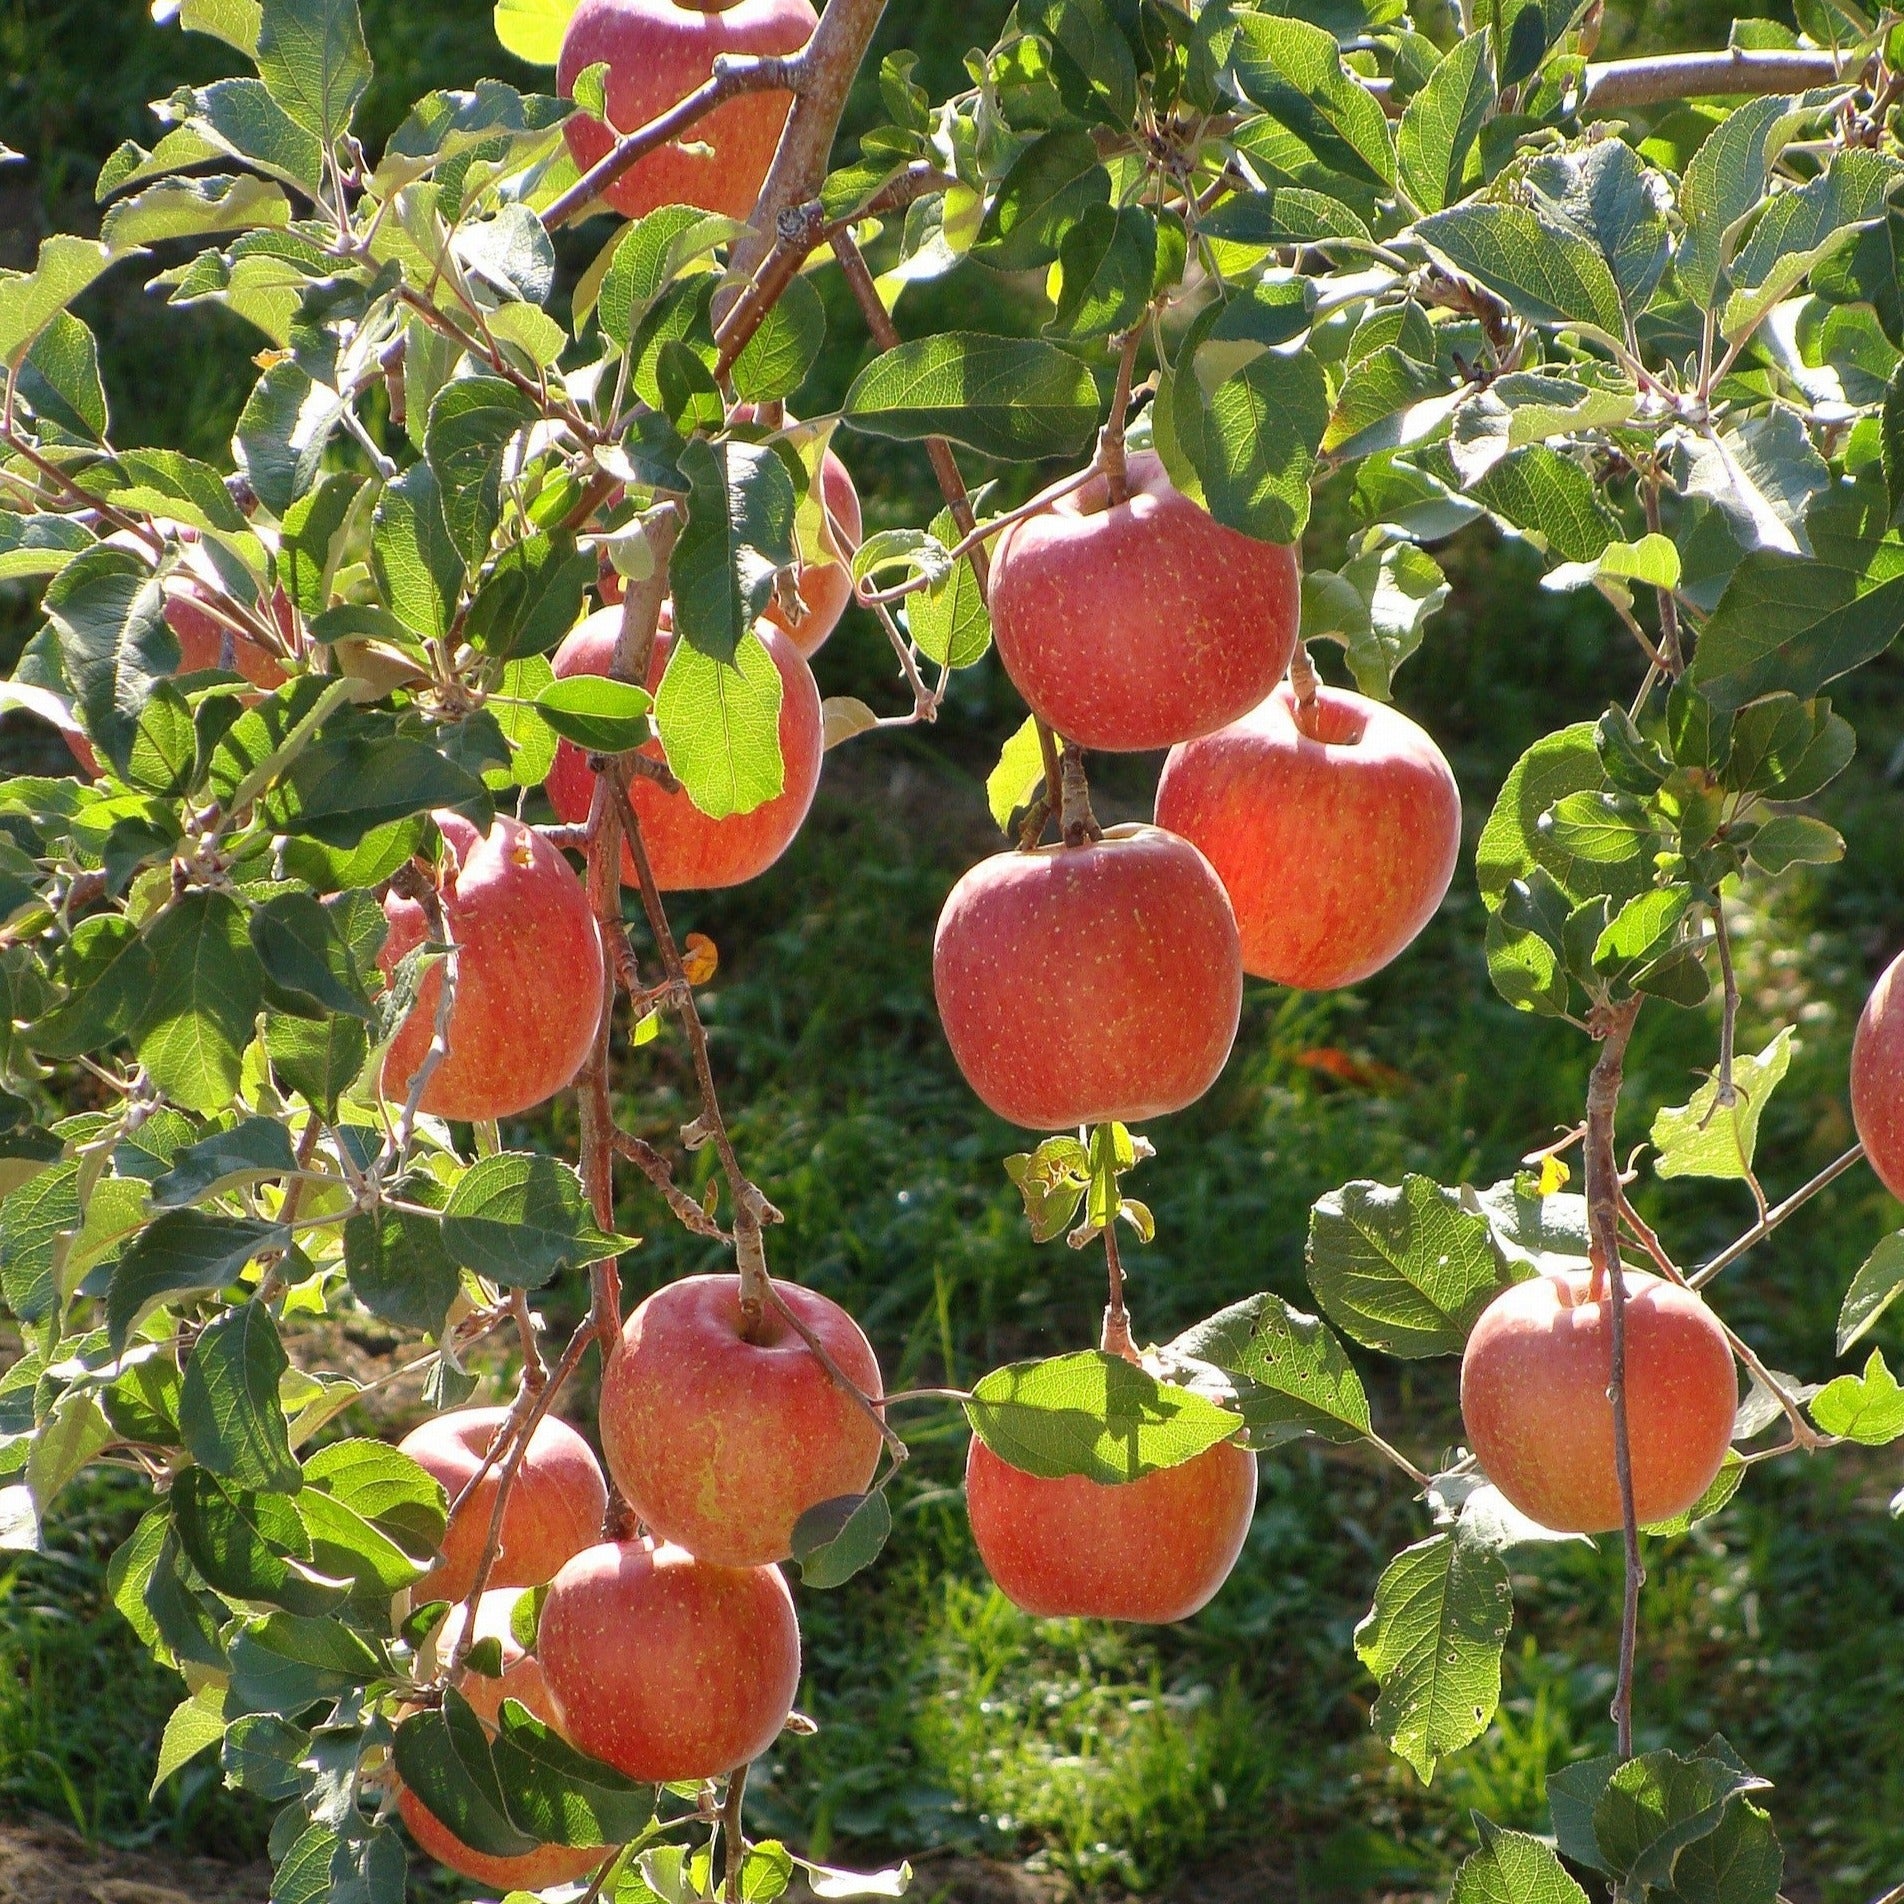 Fuji Apples - Womack Nursery